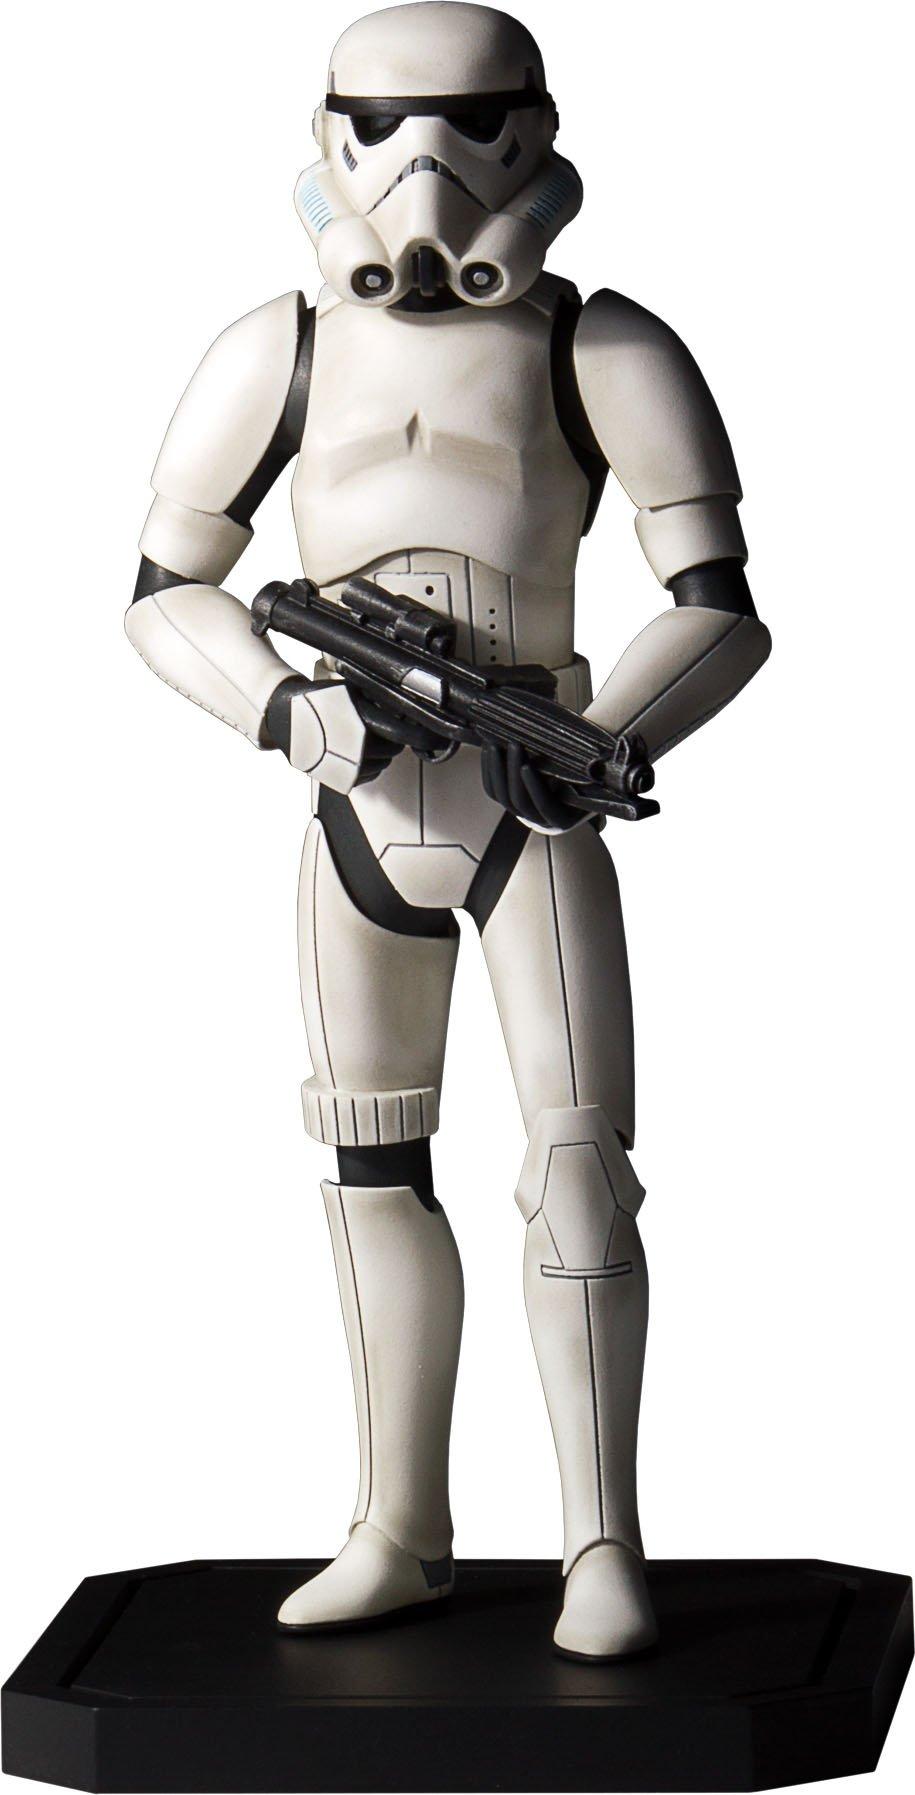 Stormtrooper Helmet Roblox Code